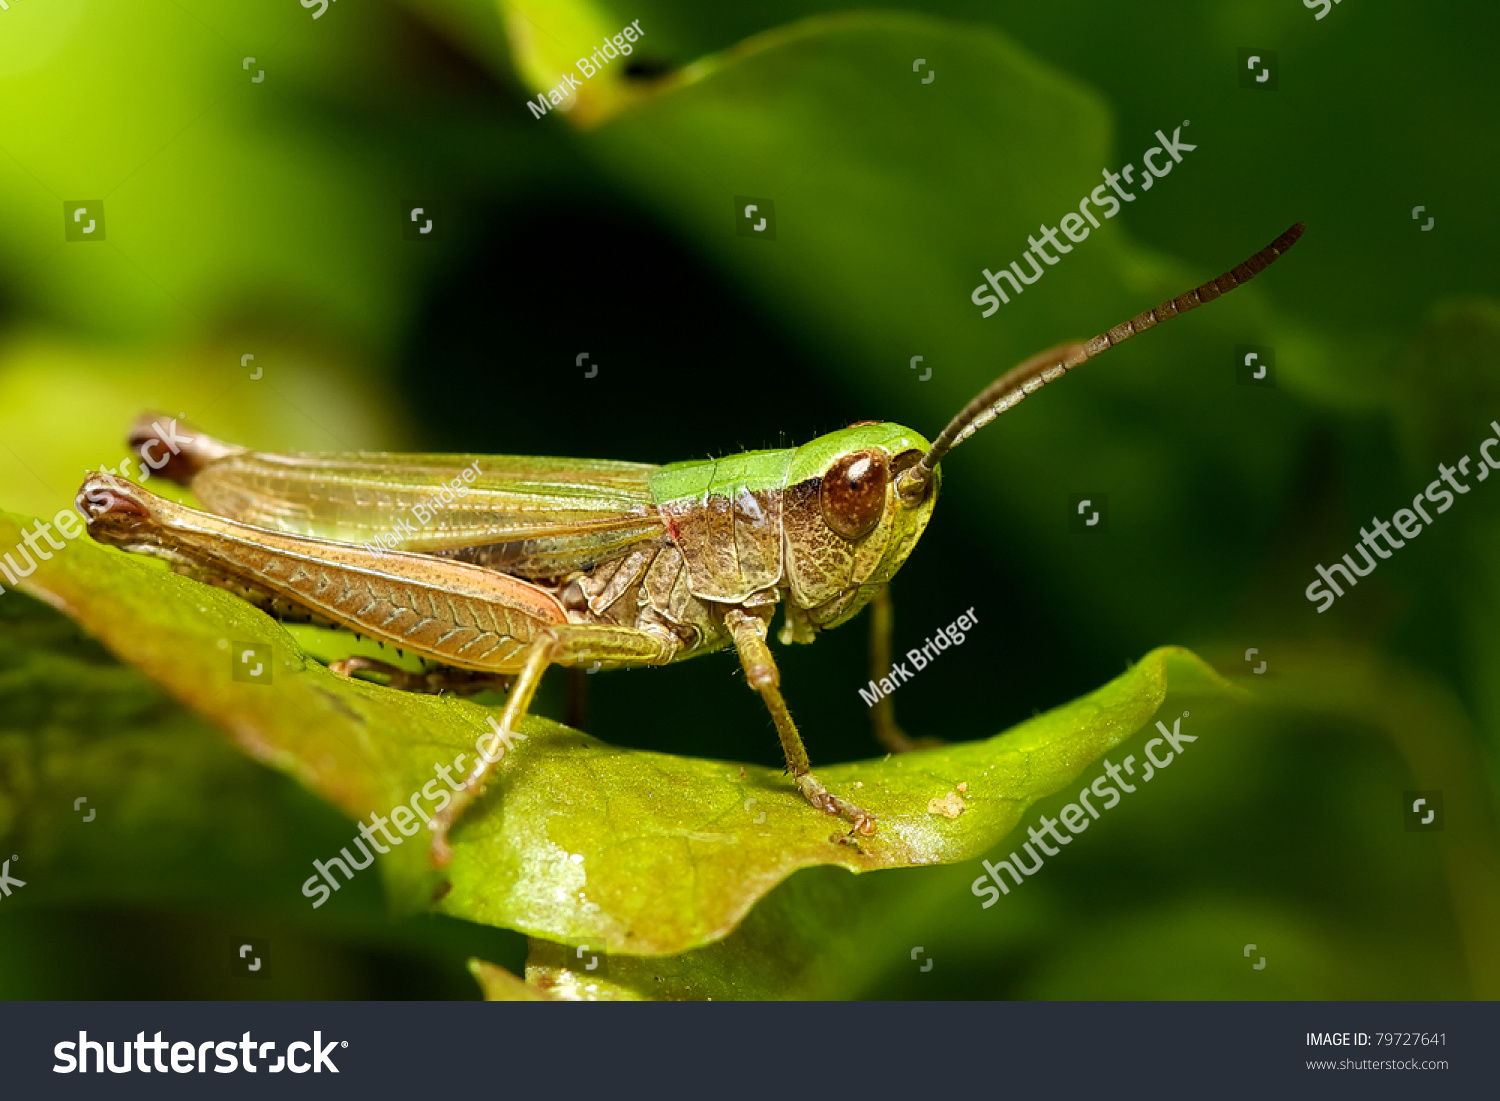 Grasshopper #79727641